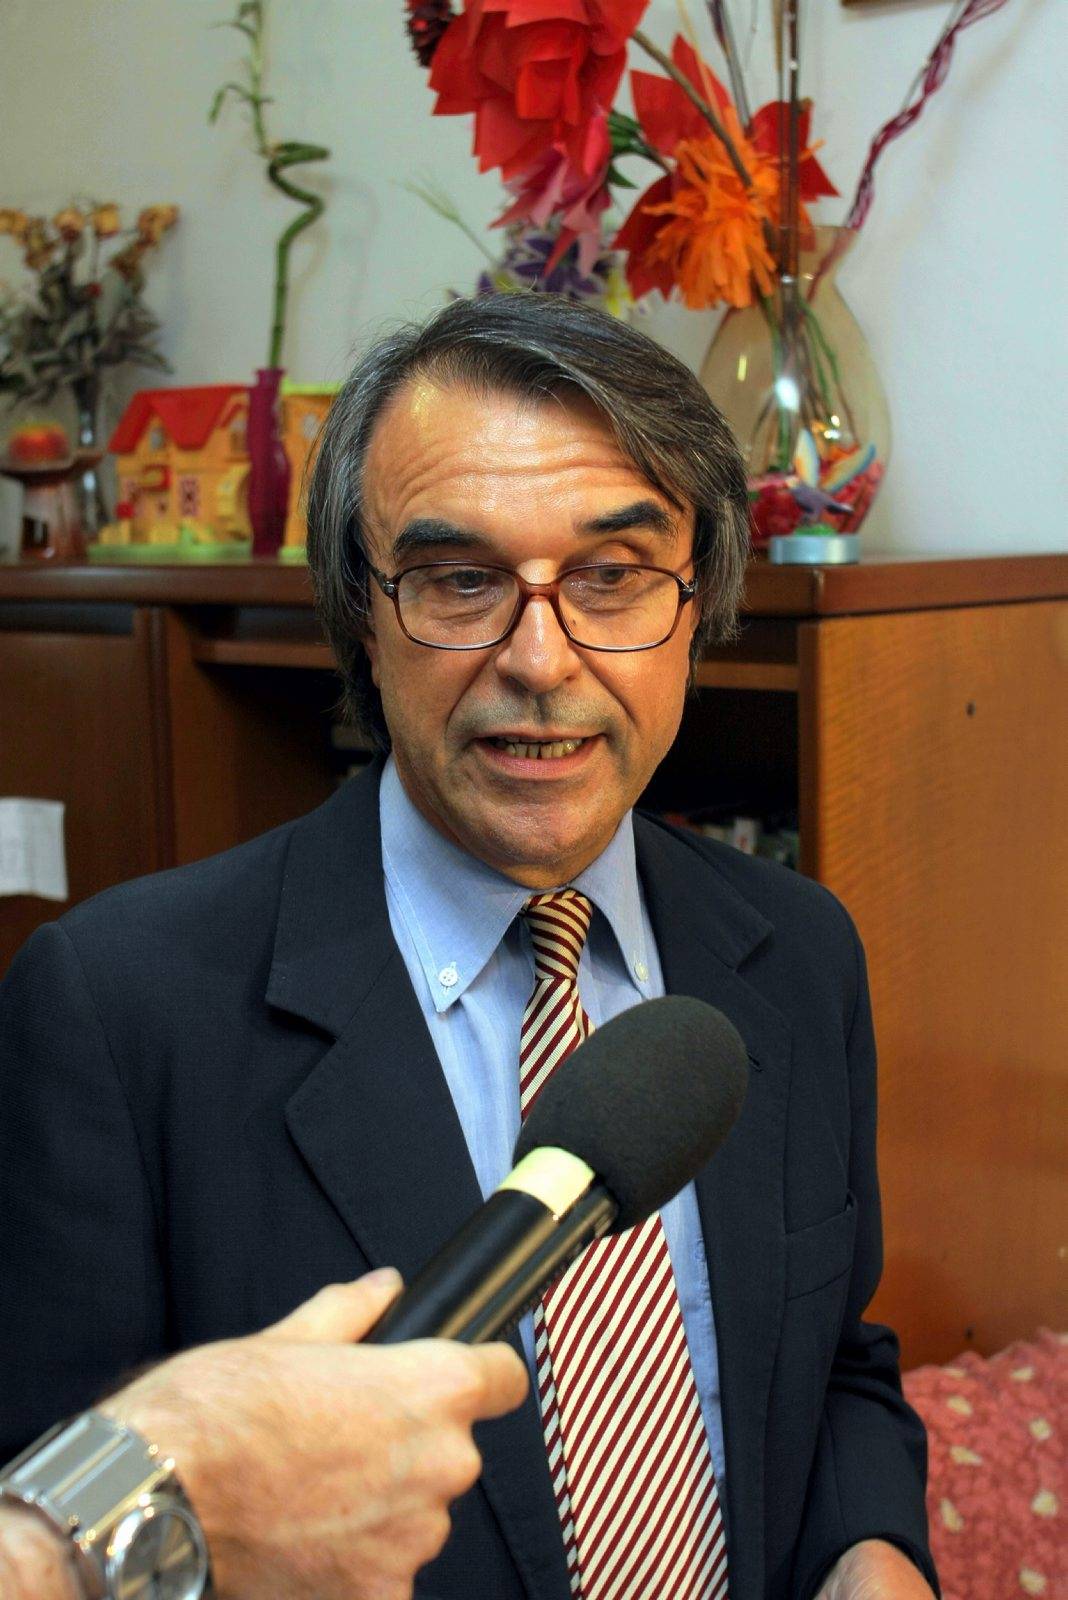 L'ex dc Serafino Generoso 
racconta il suo calvario: 
"Io rovinato da innocente"